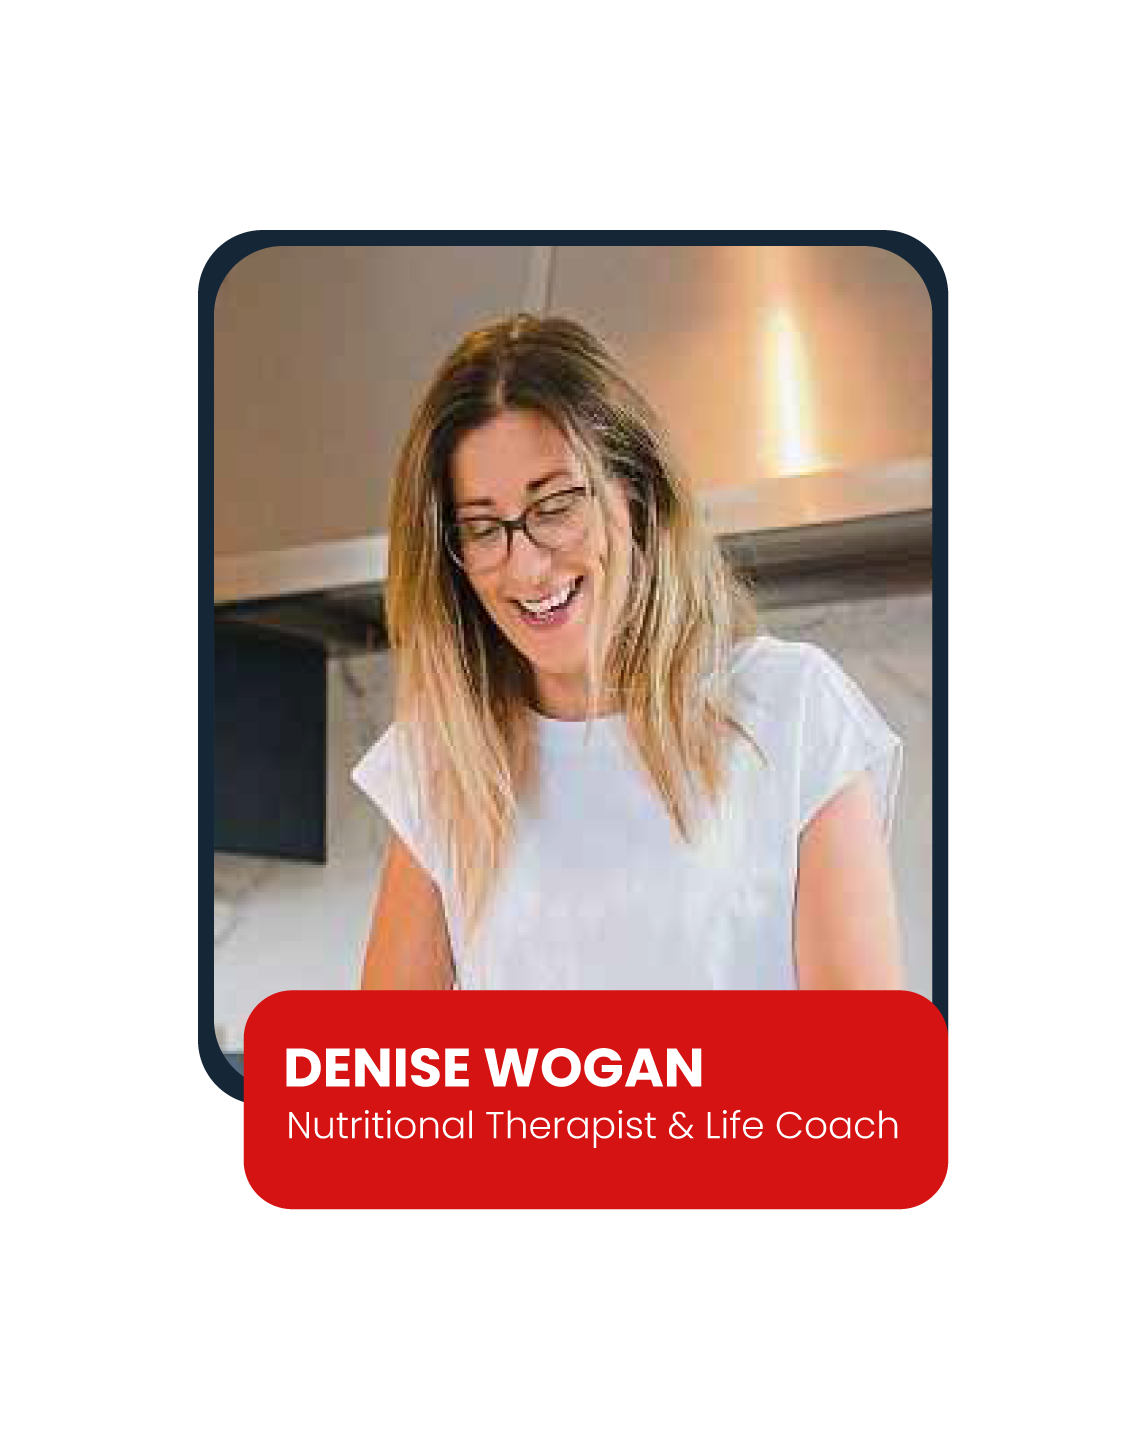 Denise Wogan